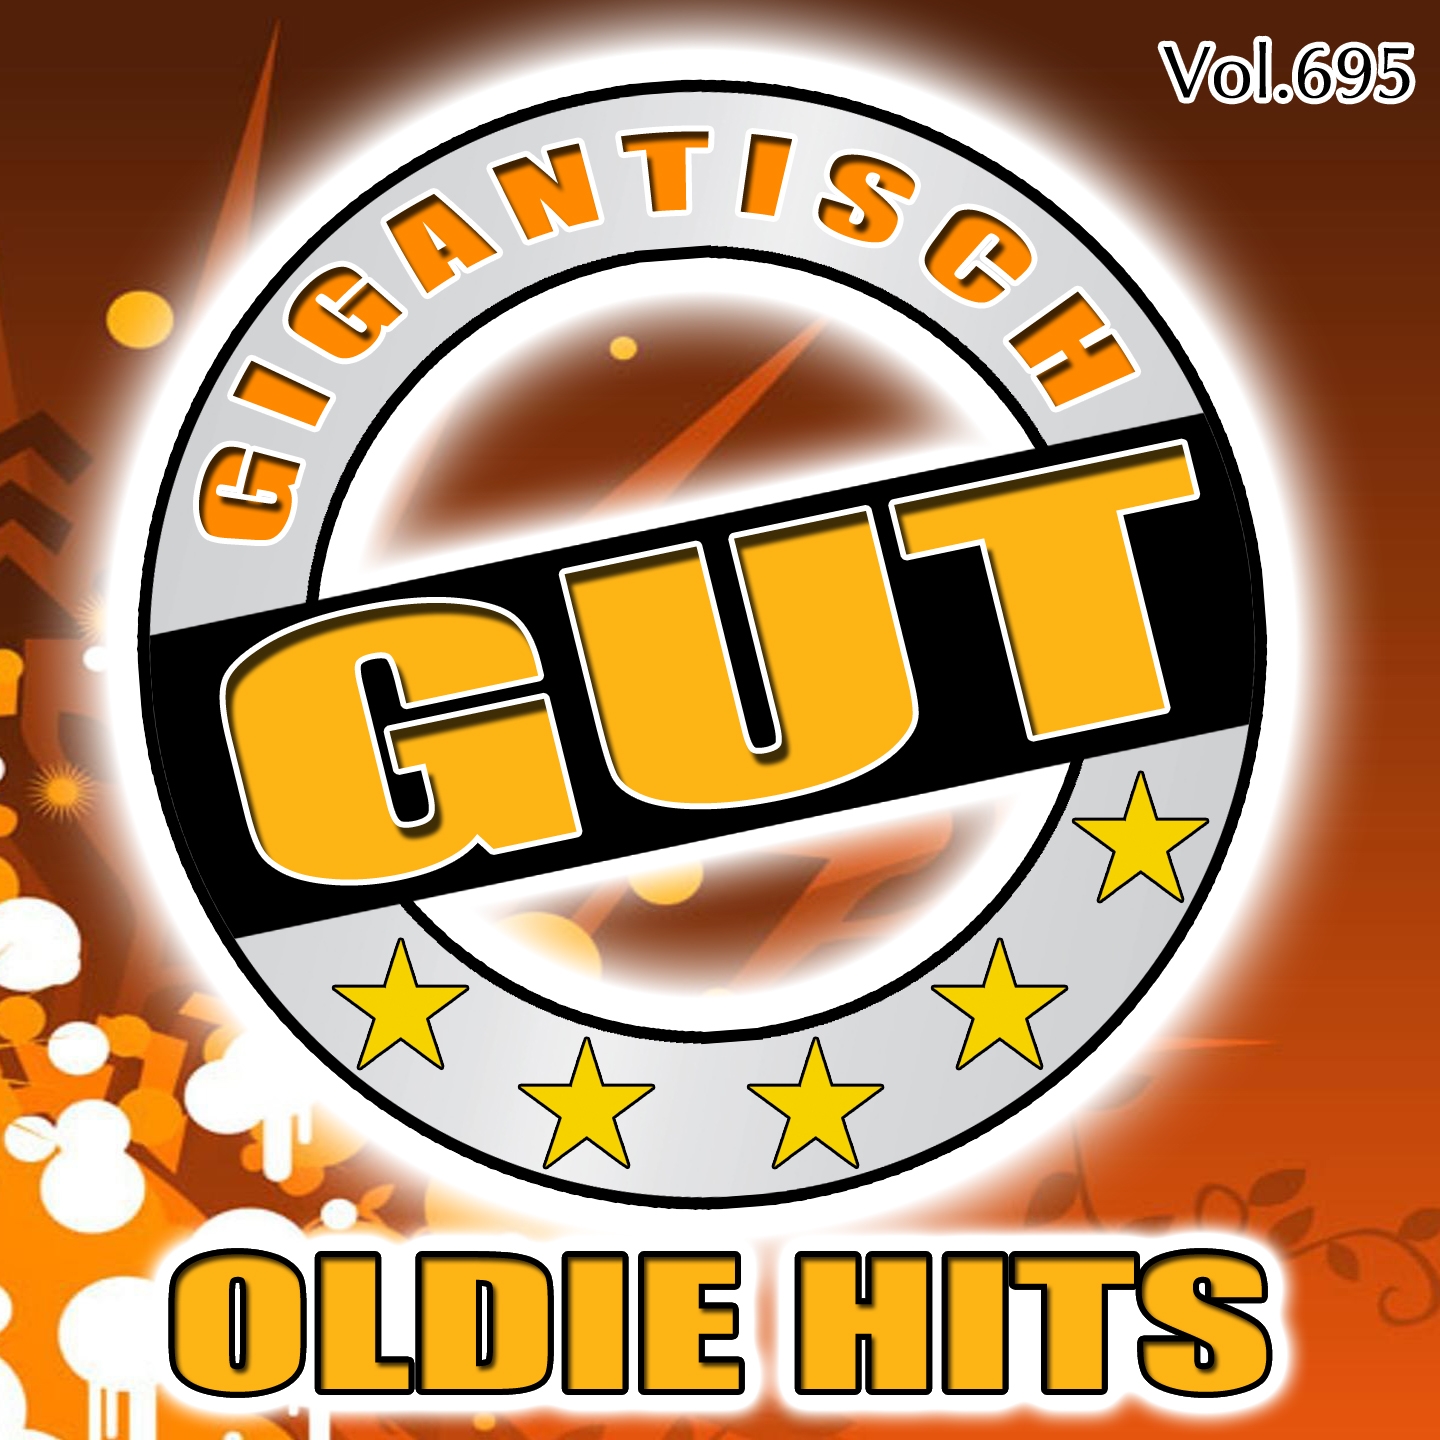 Gigantisch Gut: Oldie Hits, Vol. 695